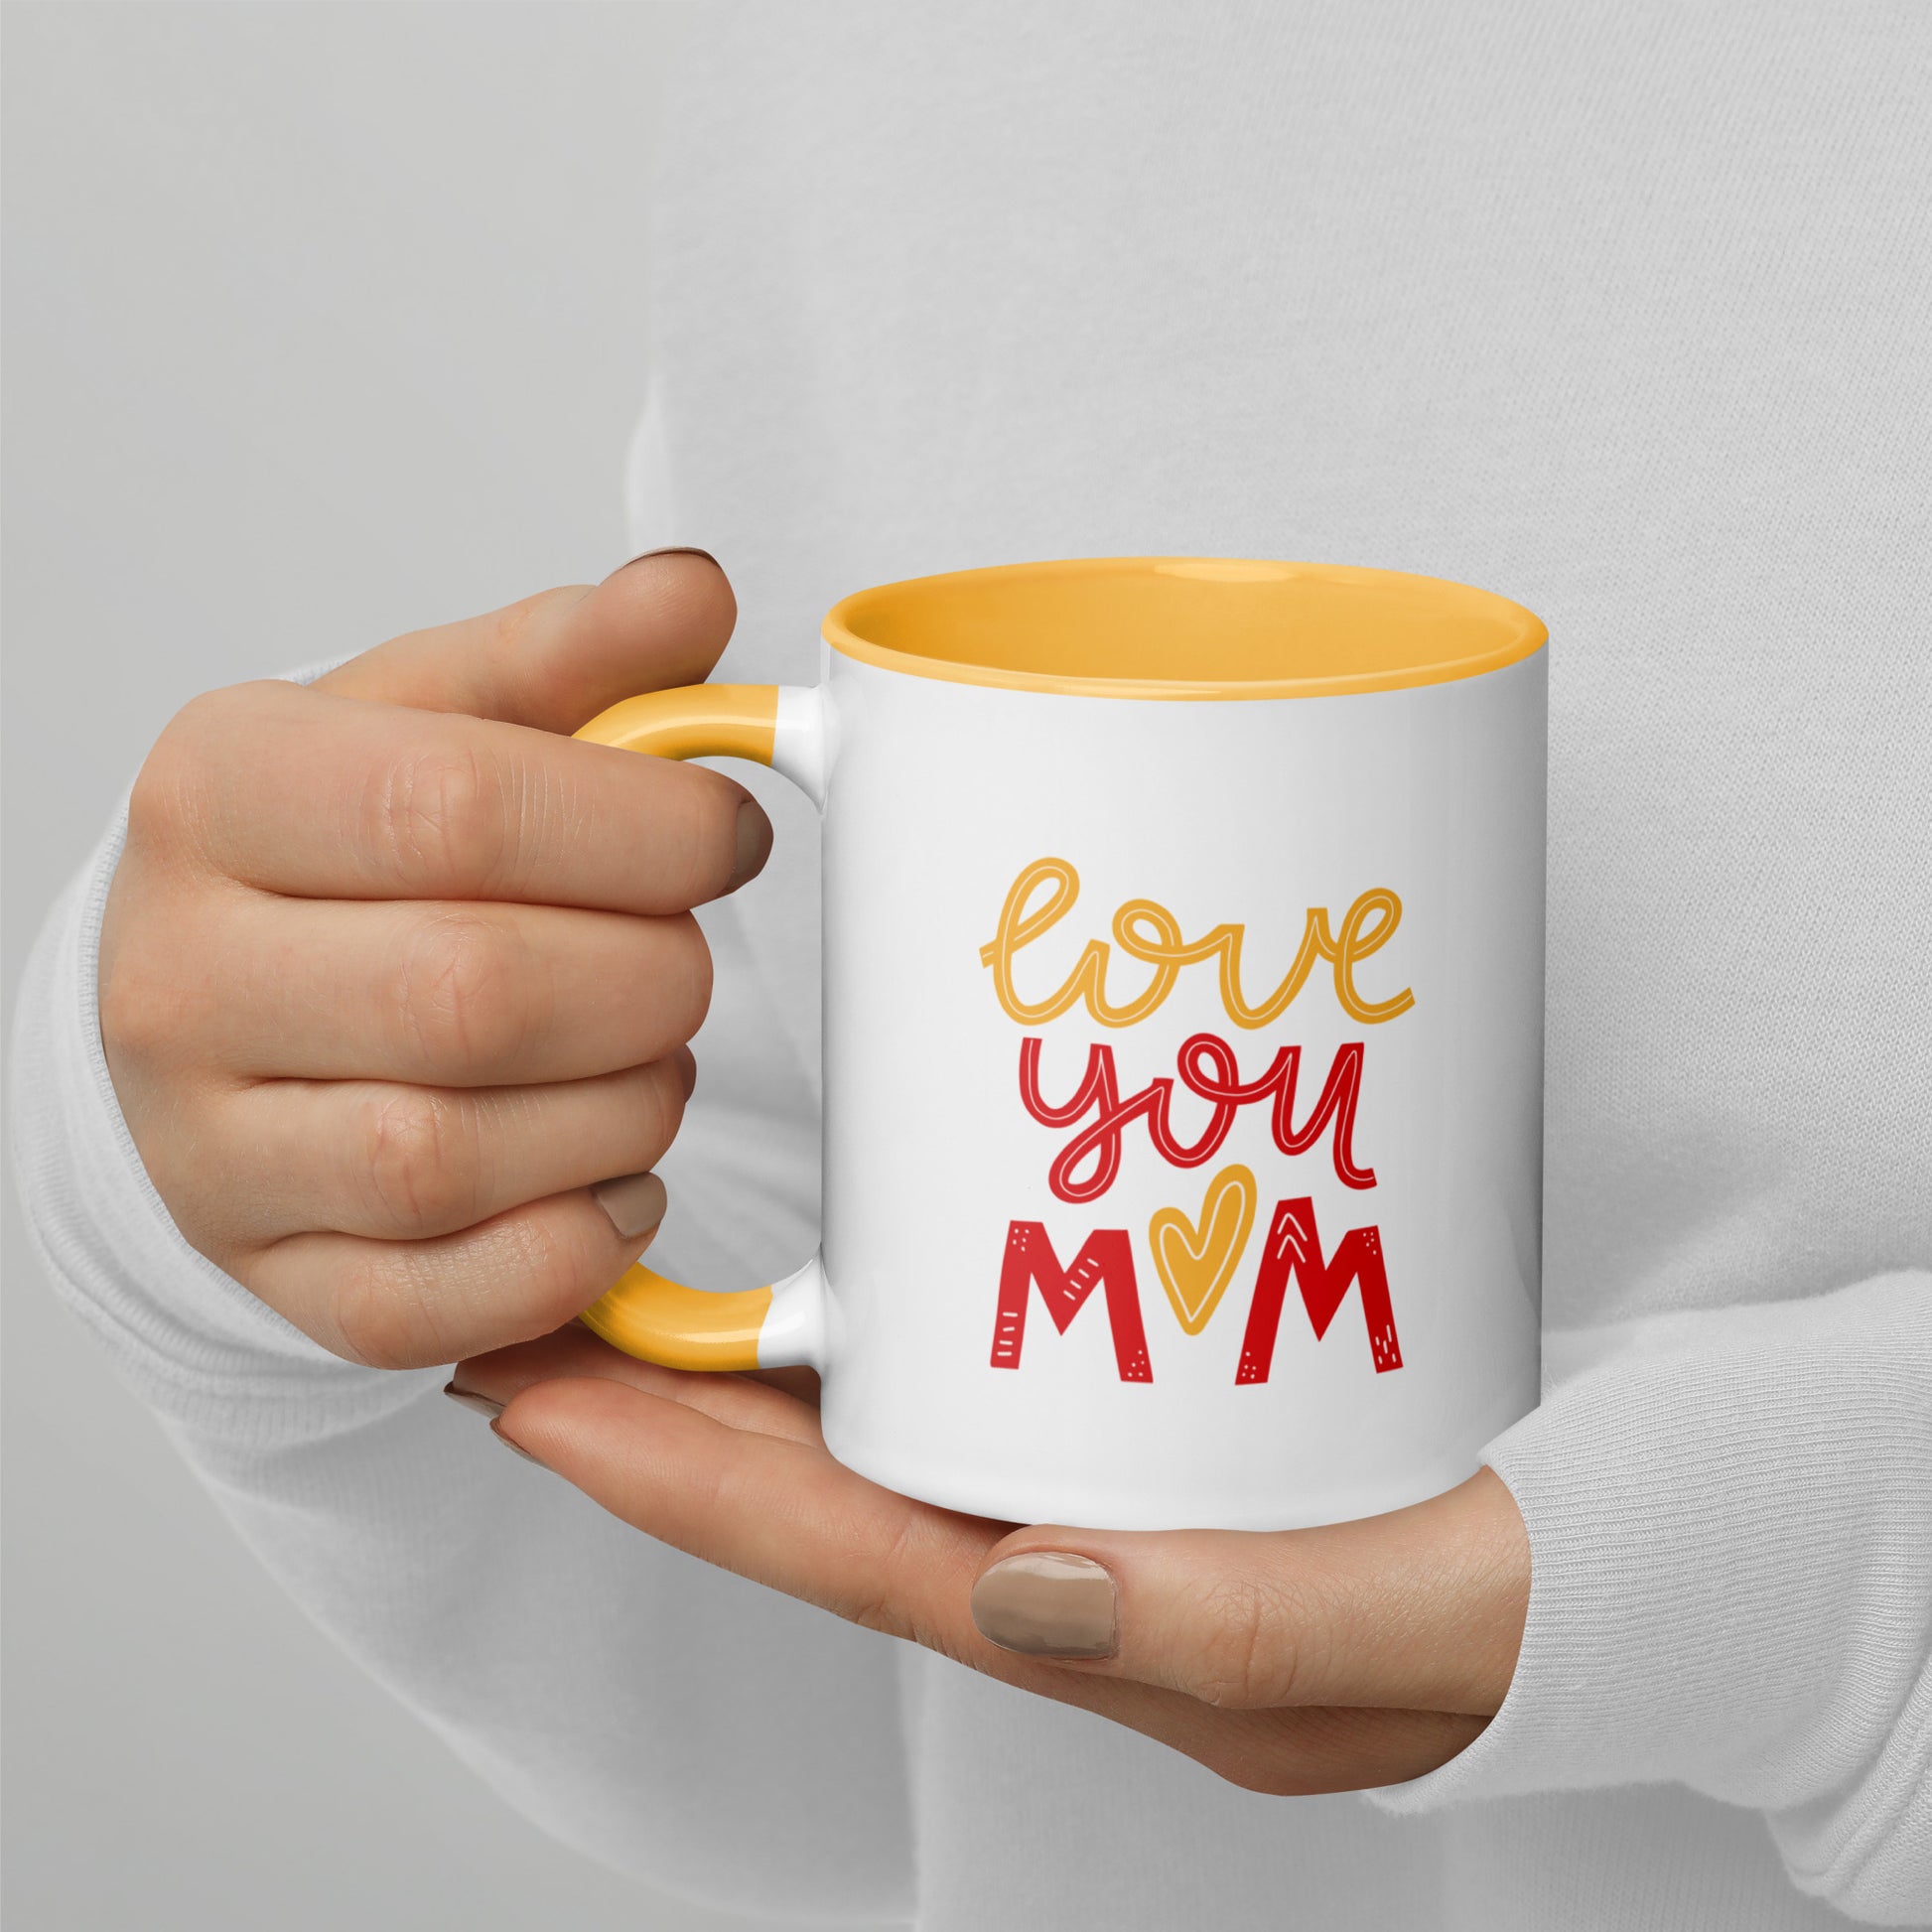 Love You Mom Coffee Mug - Mothers Day Gift - Coffee Mug for Mom - Gift for Mom - 11oz